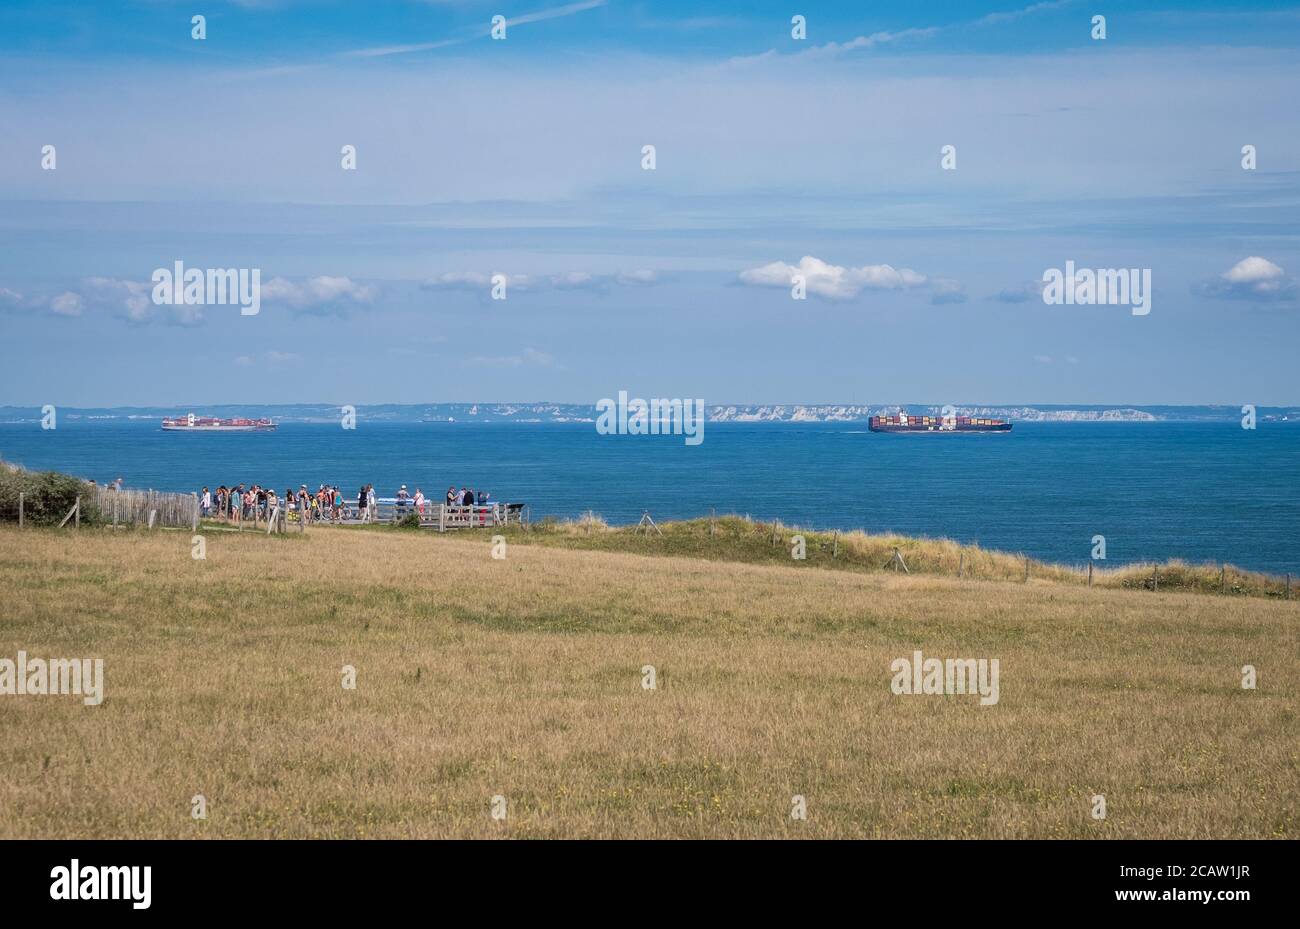 Les touristes appréciant la vue sur les bateaux à conteneurs passant par le Détroit de Douvres Banque D'Images